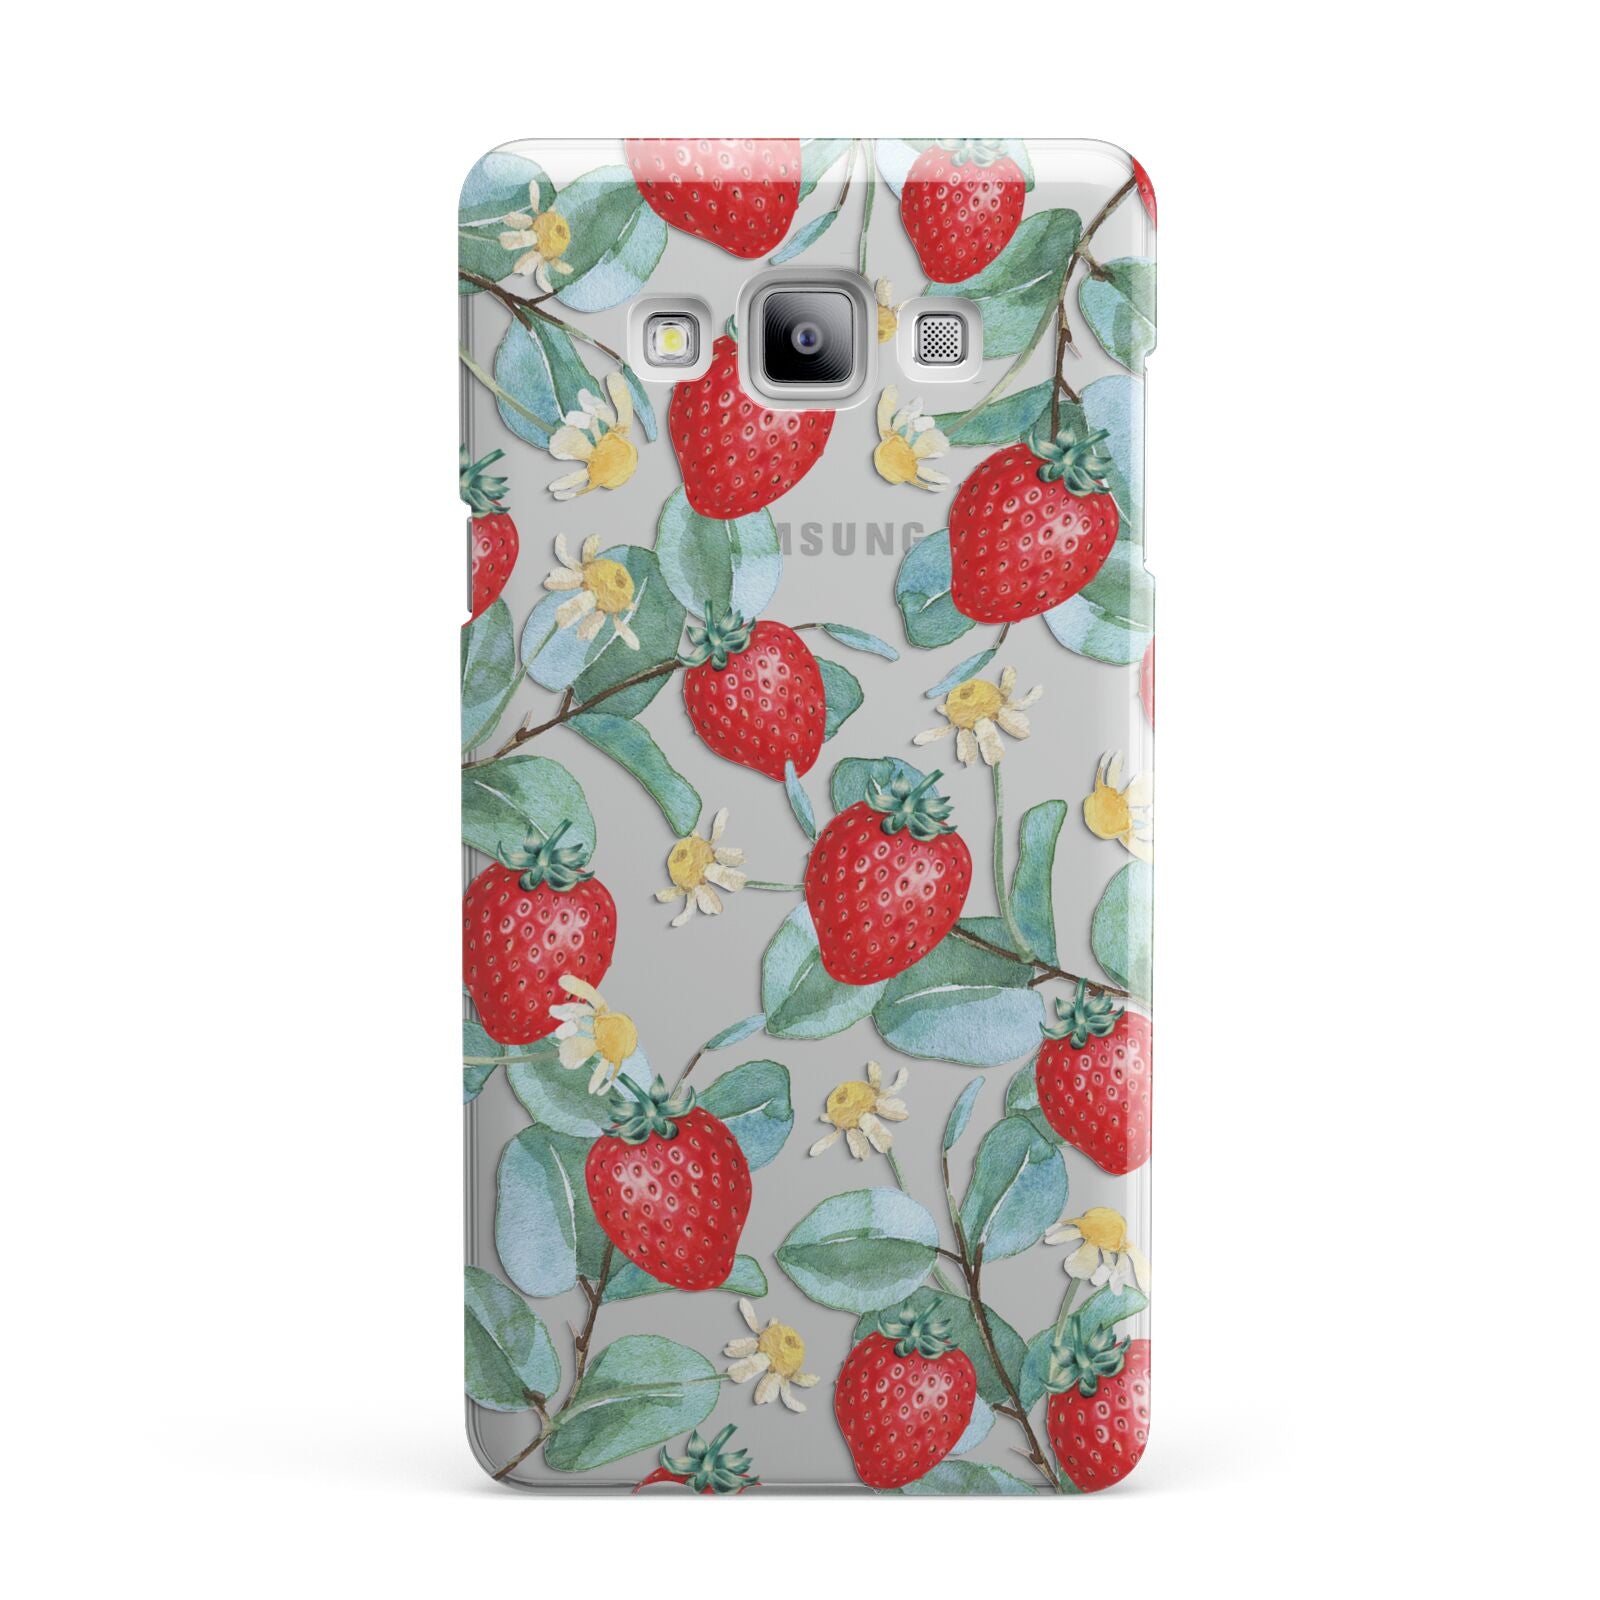 Strawberry Plant Samsung Galaxy A7 2015 Case